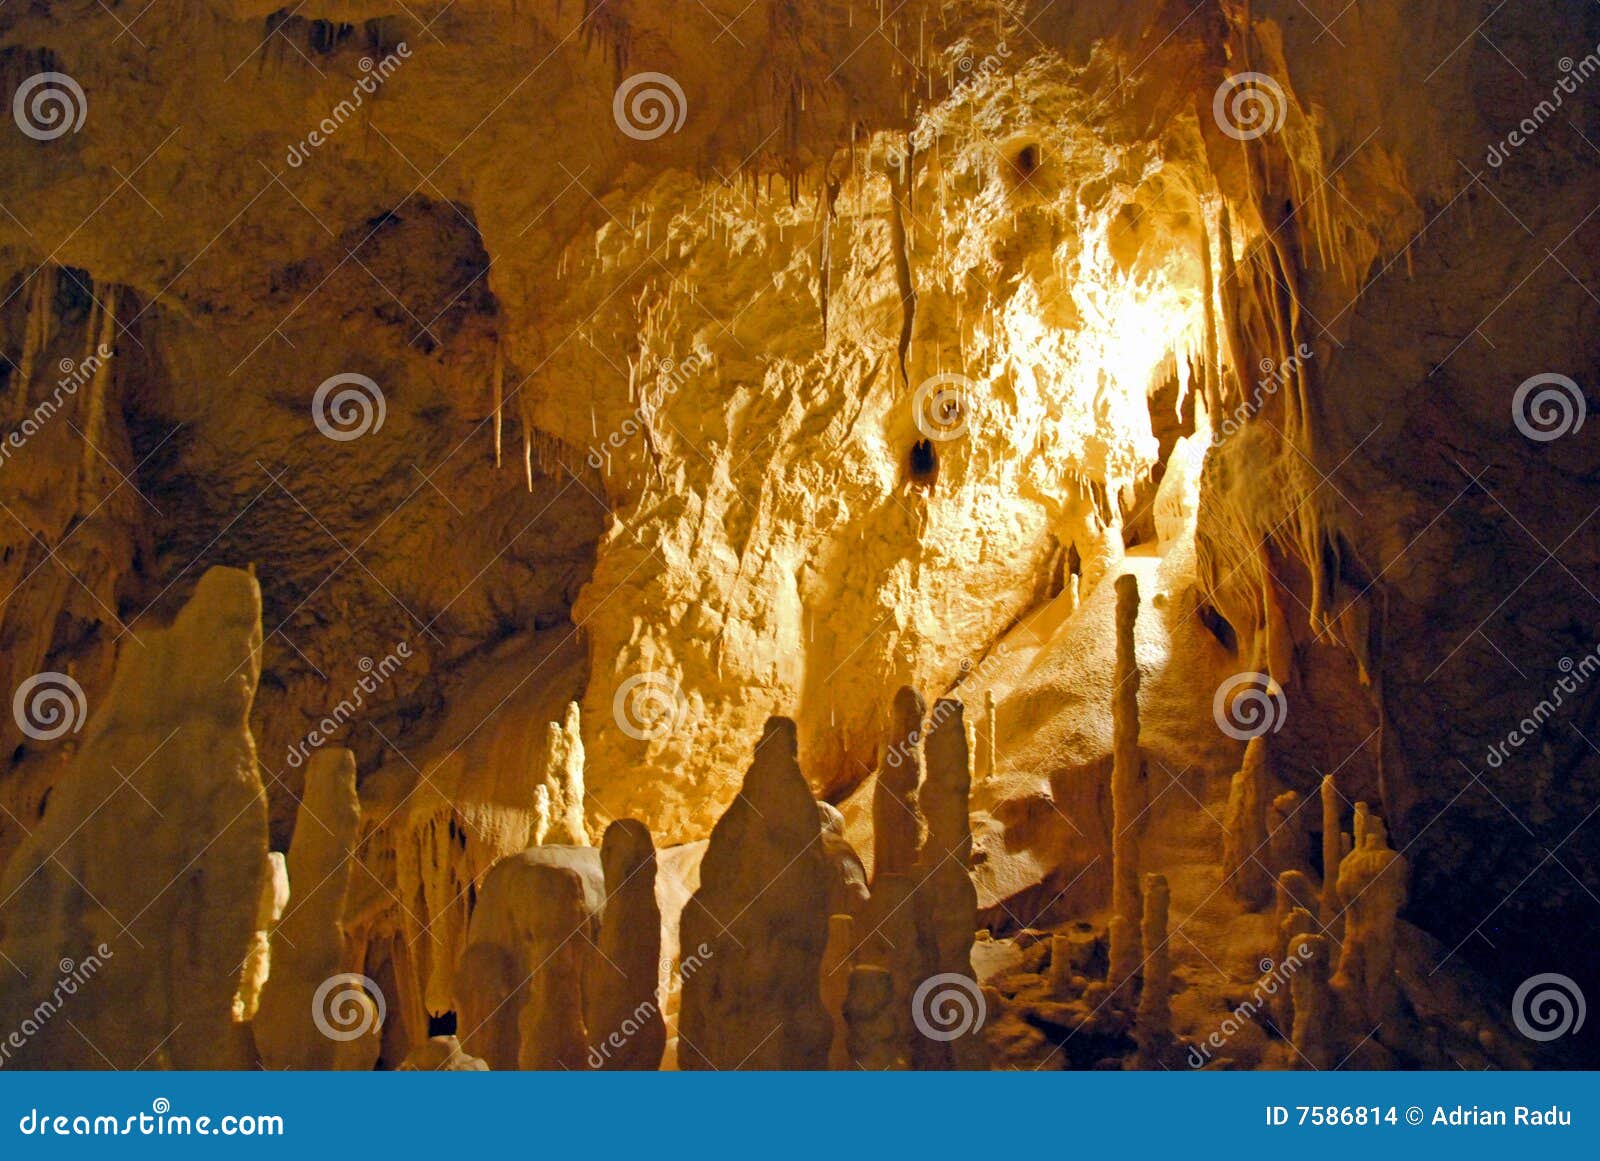 stalagmite in cave